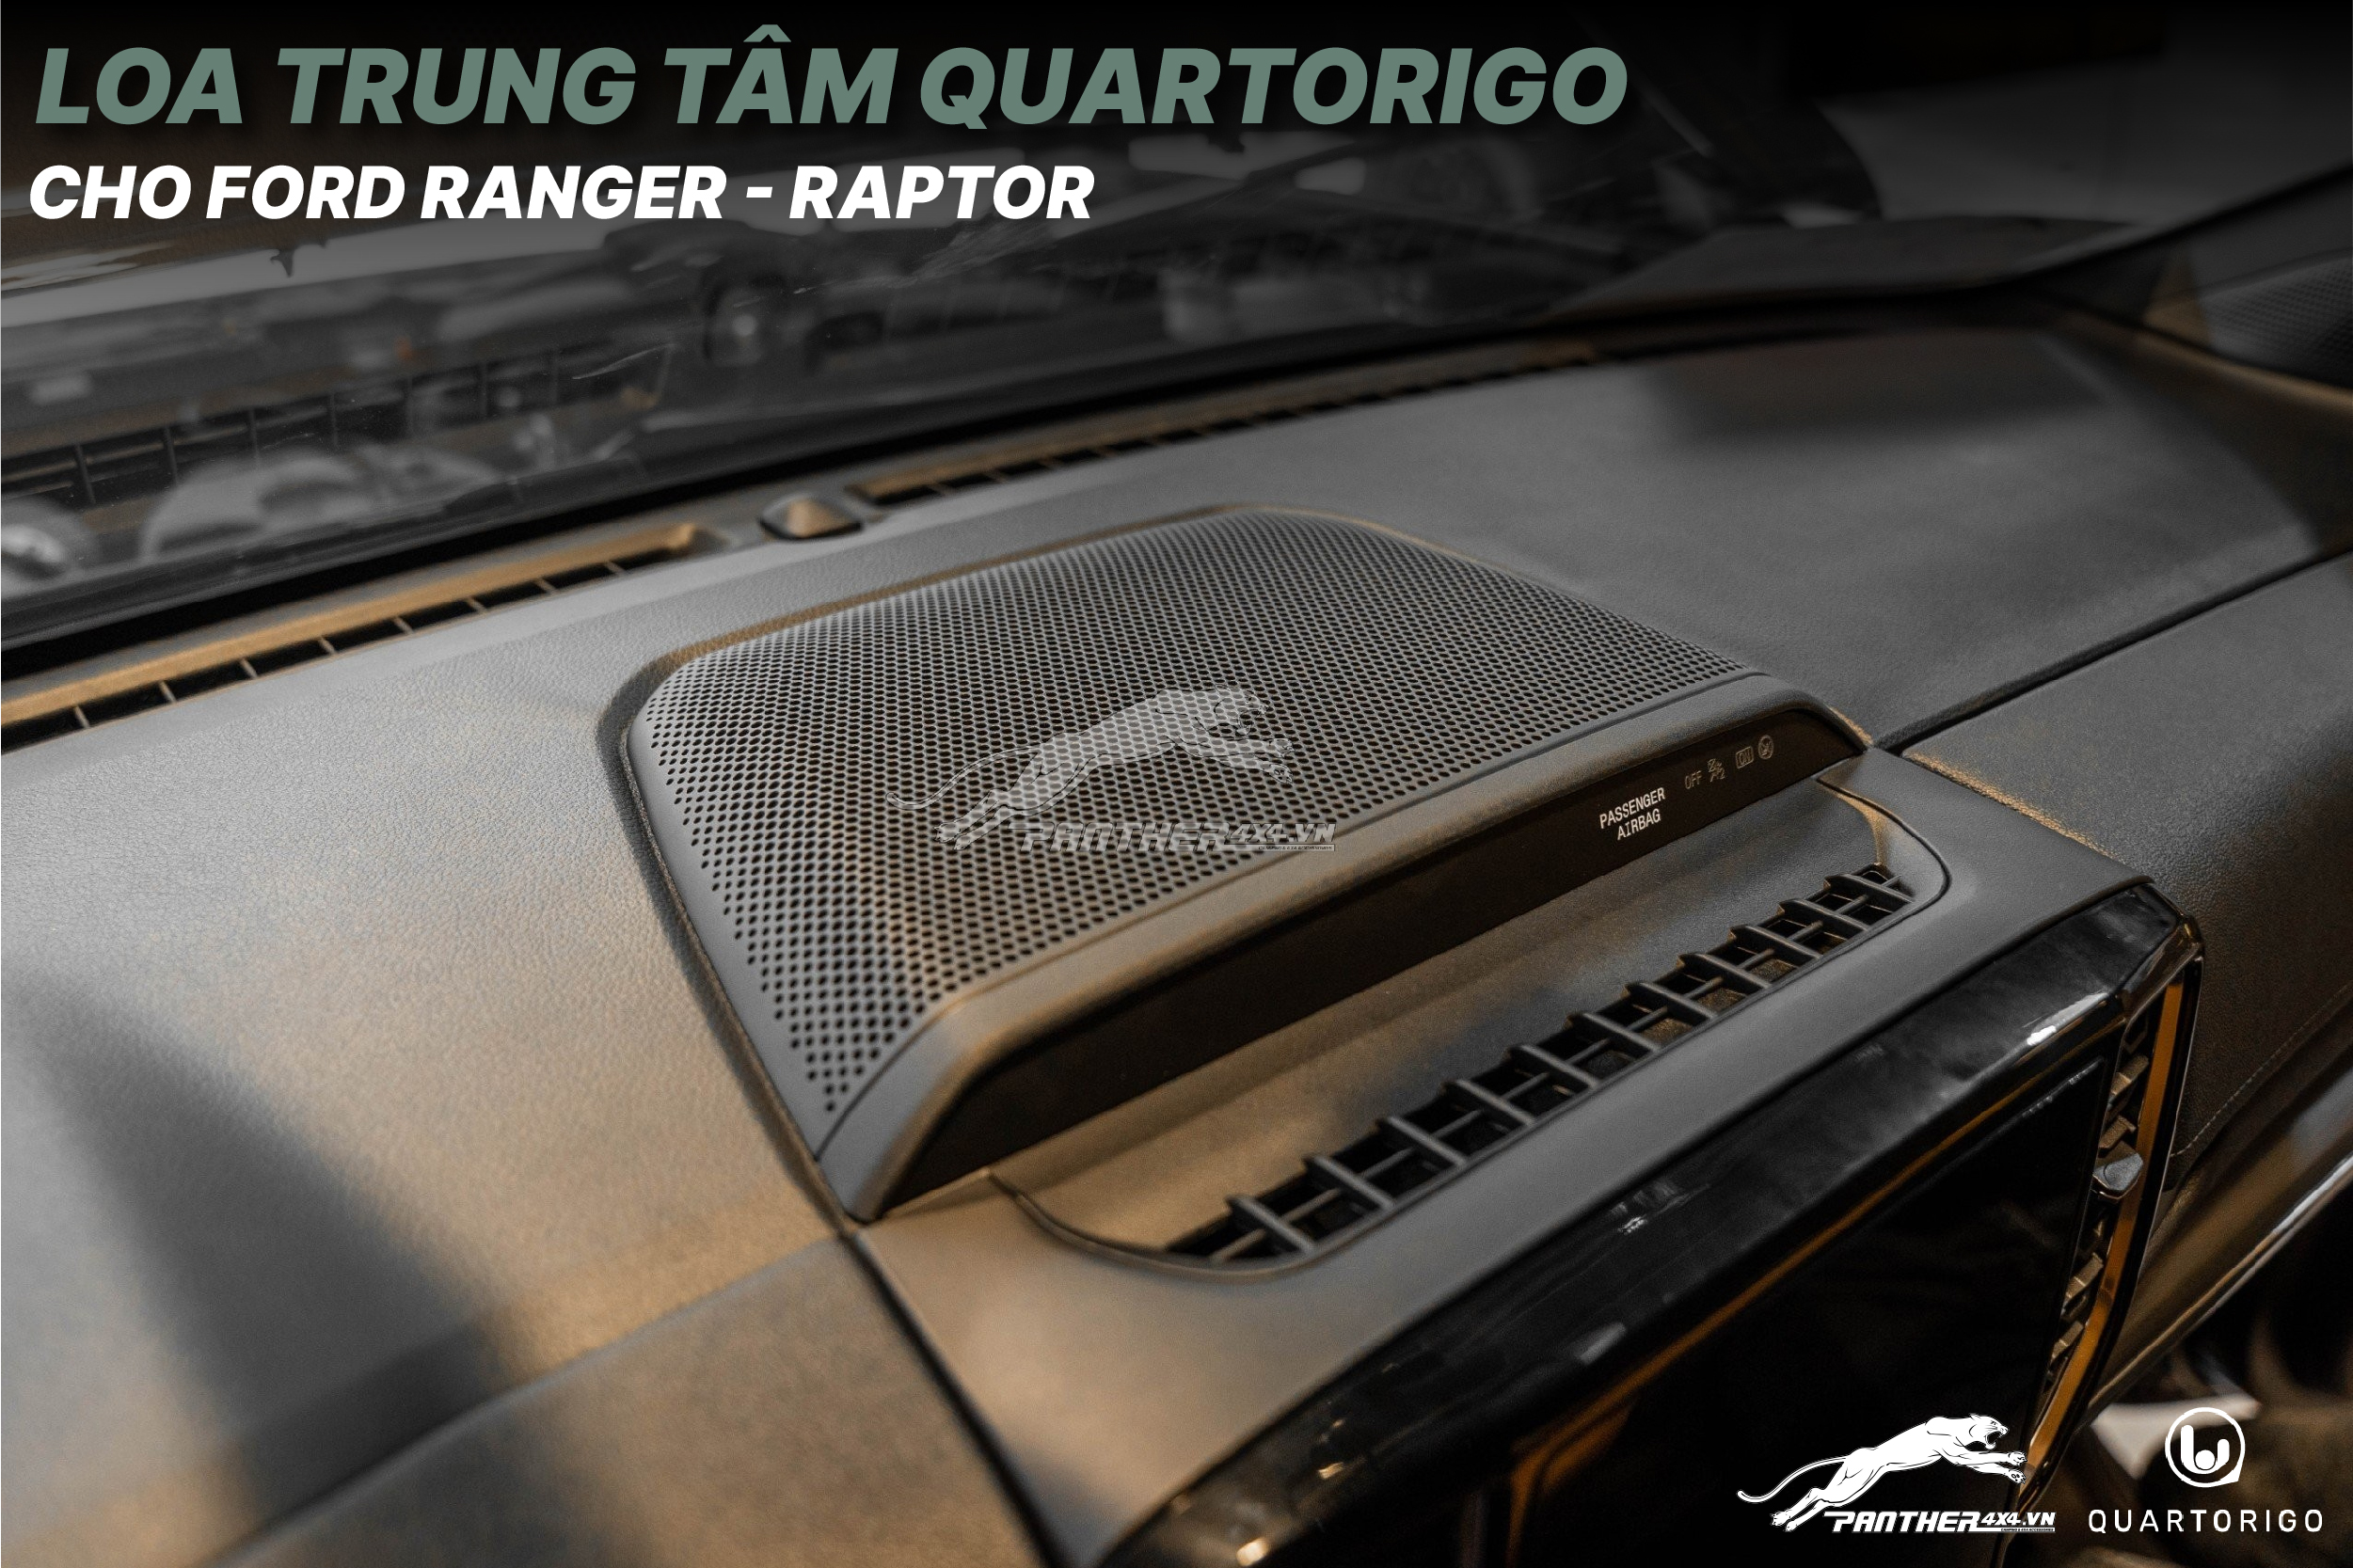 Loa trung tâm Quartorigo cho Ford Ranger và Raptor